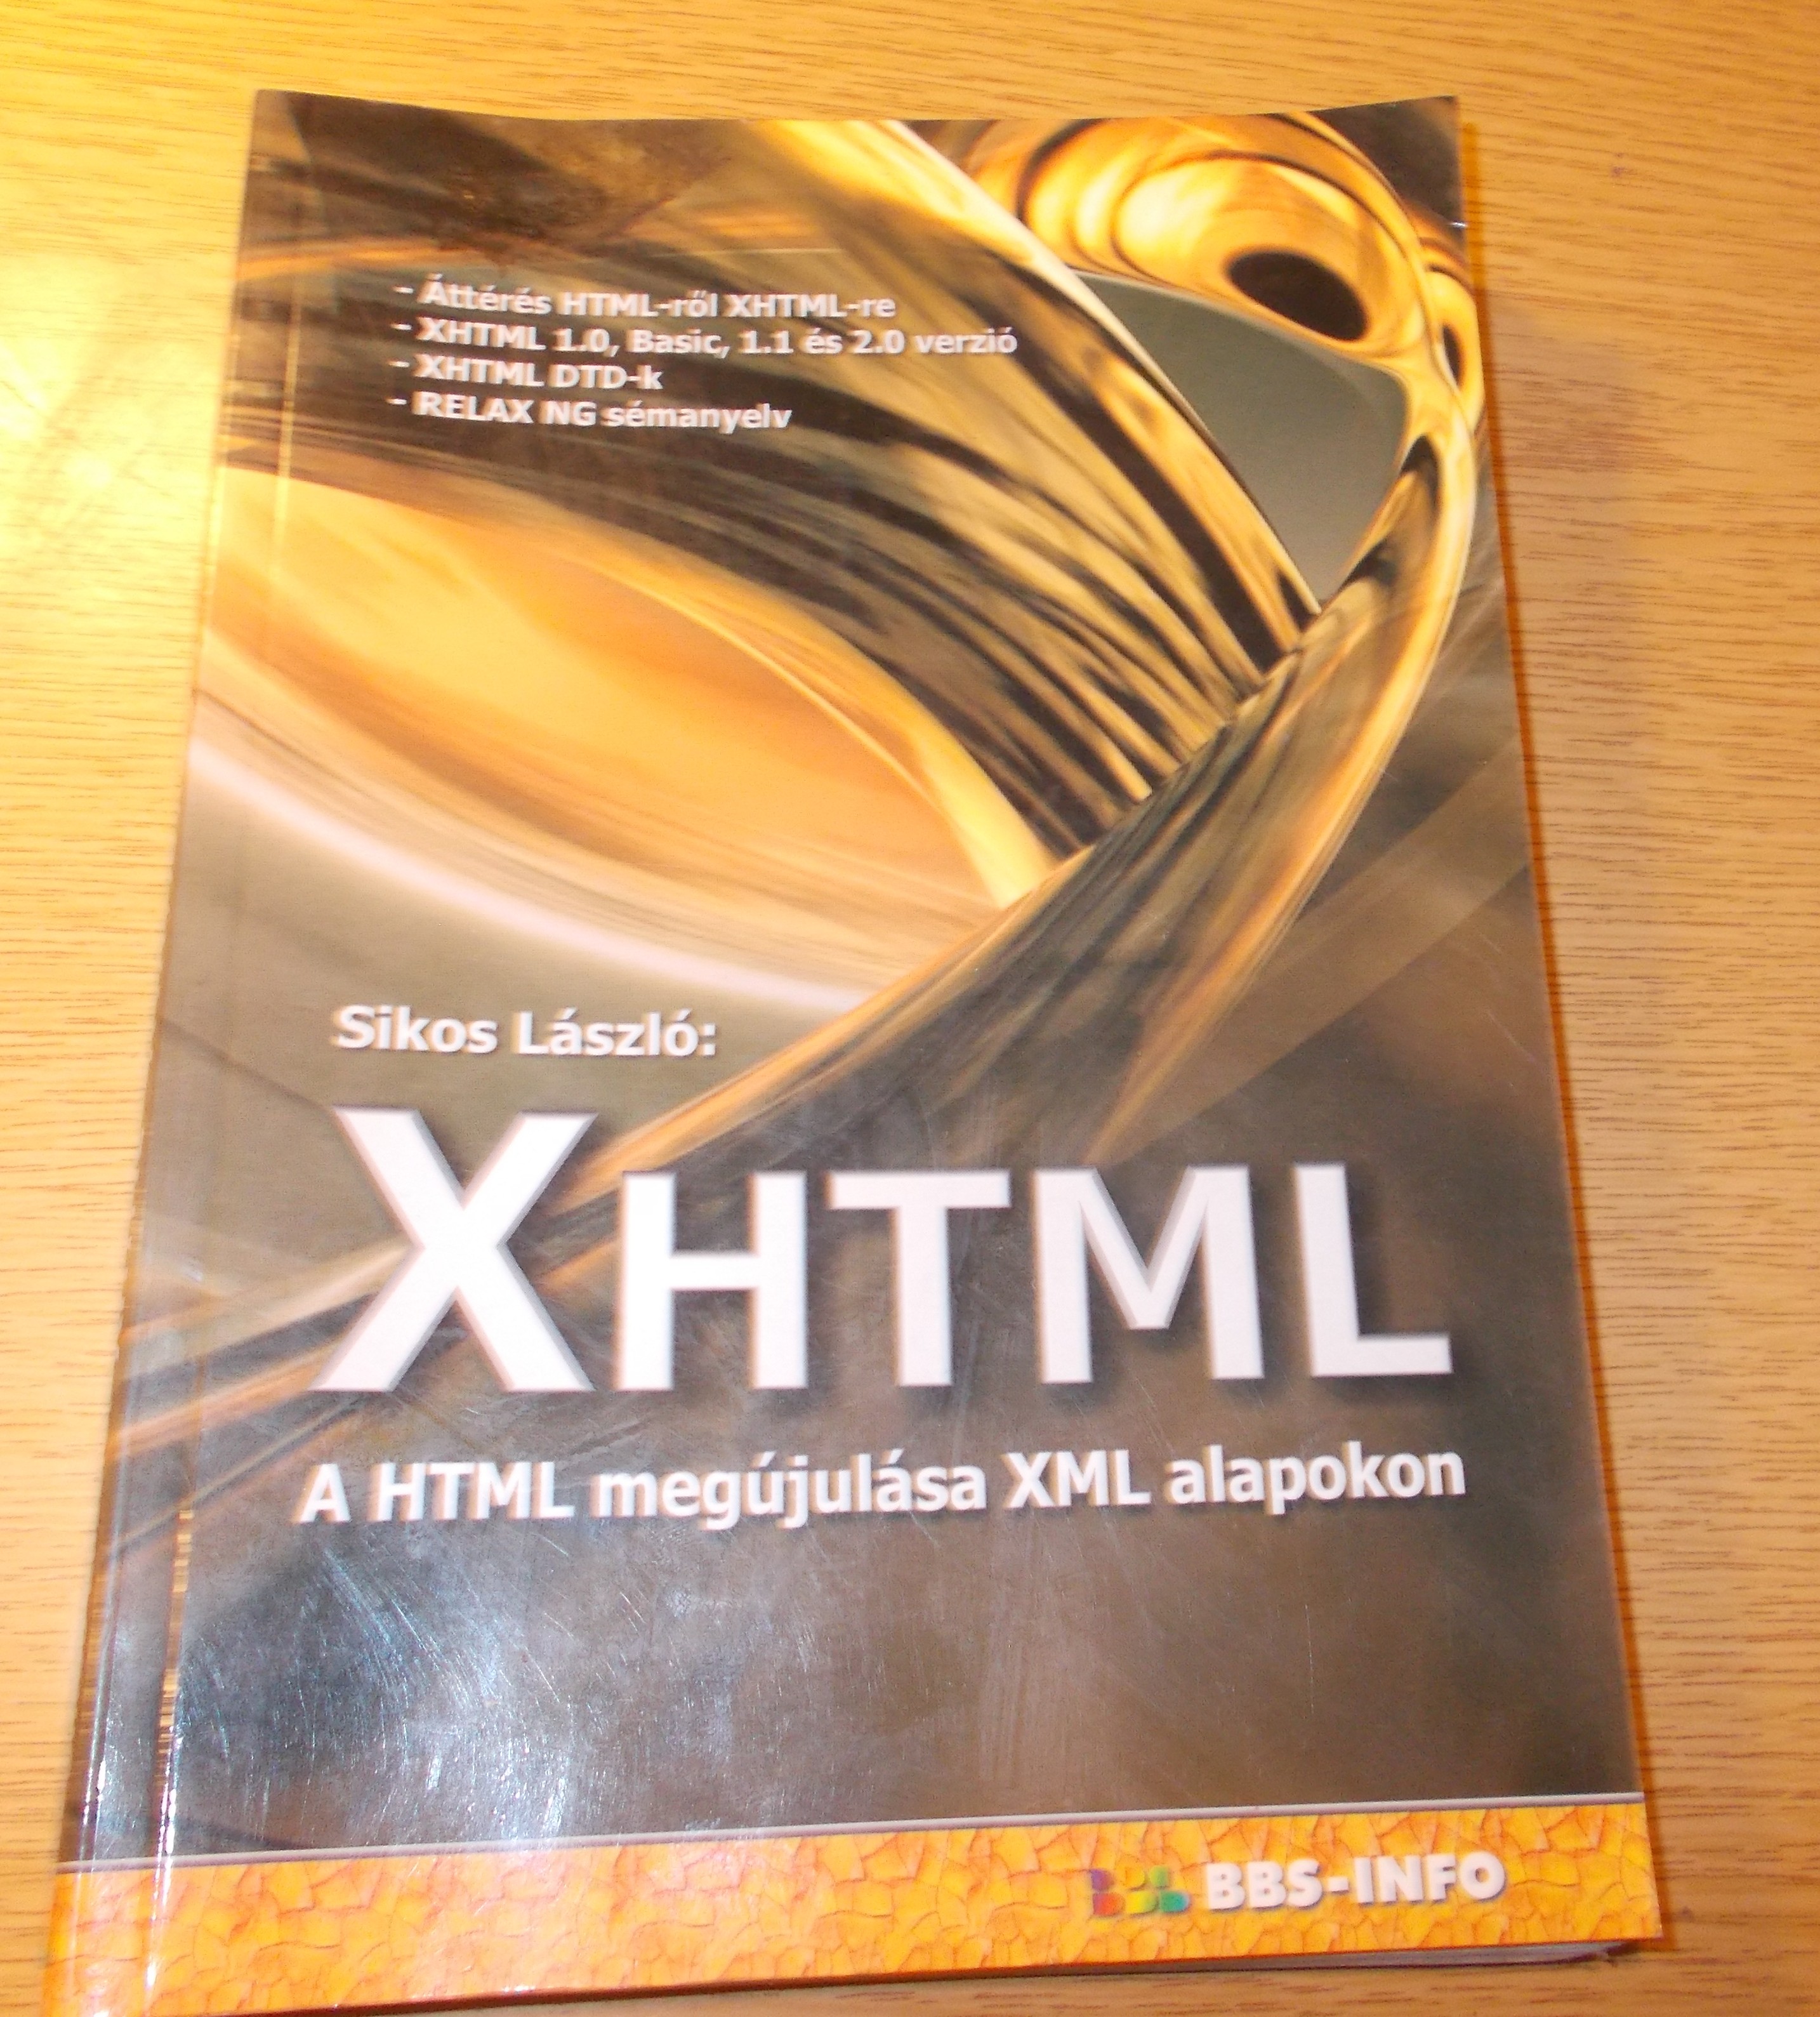 Sikos László: XHTML A HTML megújítása XML alapokon könyv

Sikos László: XHTML A HTML megújítása XML alapokon könyv
-Áttérés HTML-rő XHTML-re
-XHTML 1.0 Basic, 1.1 és 2.0 verzió
-XHTML DTD-k
-RELAX NG sémanyelv

BBS-INFO Kiadó - 2004
A könyv oldala elég koszos, kicsit hibás is, a tartalom jól olvasható